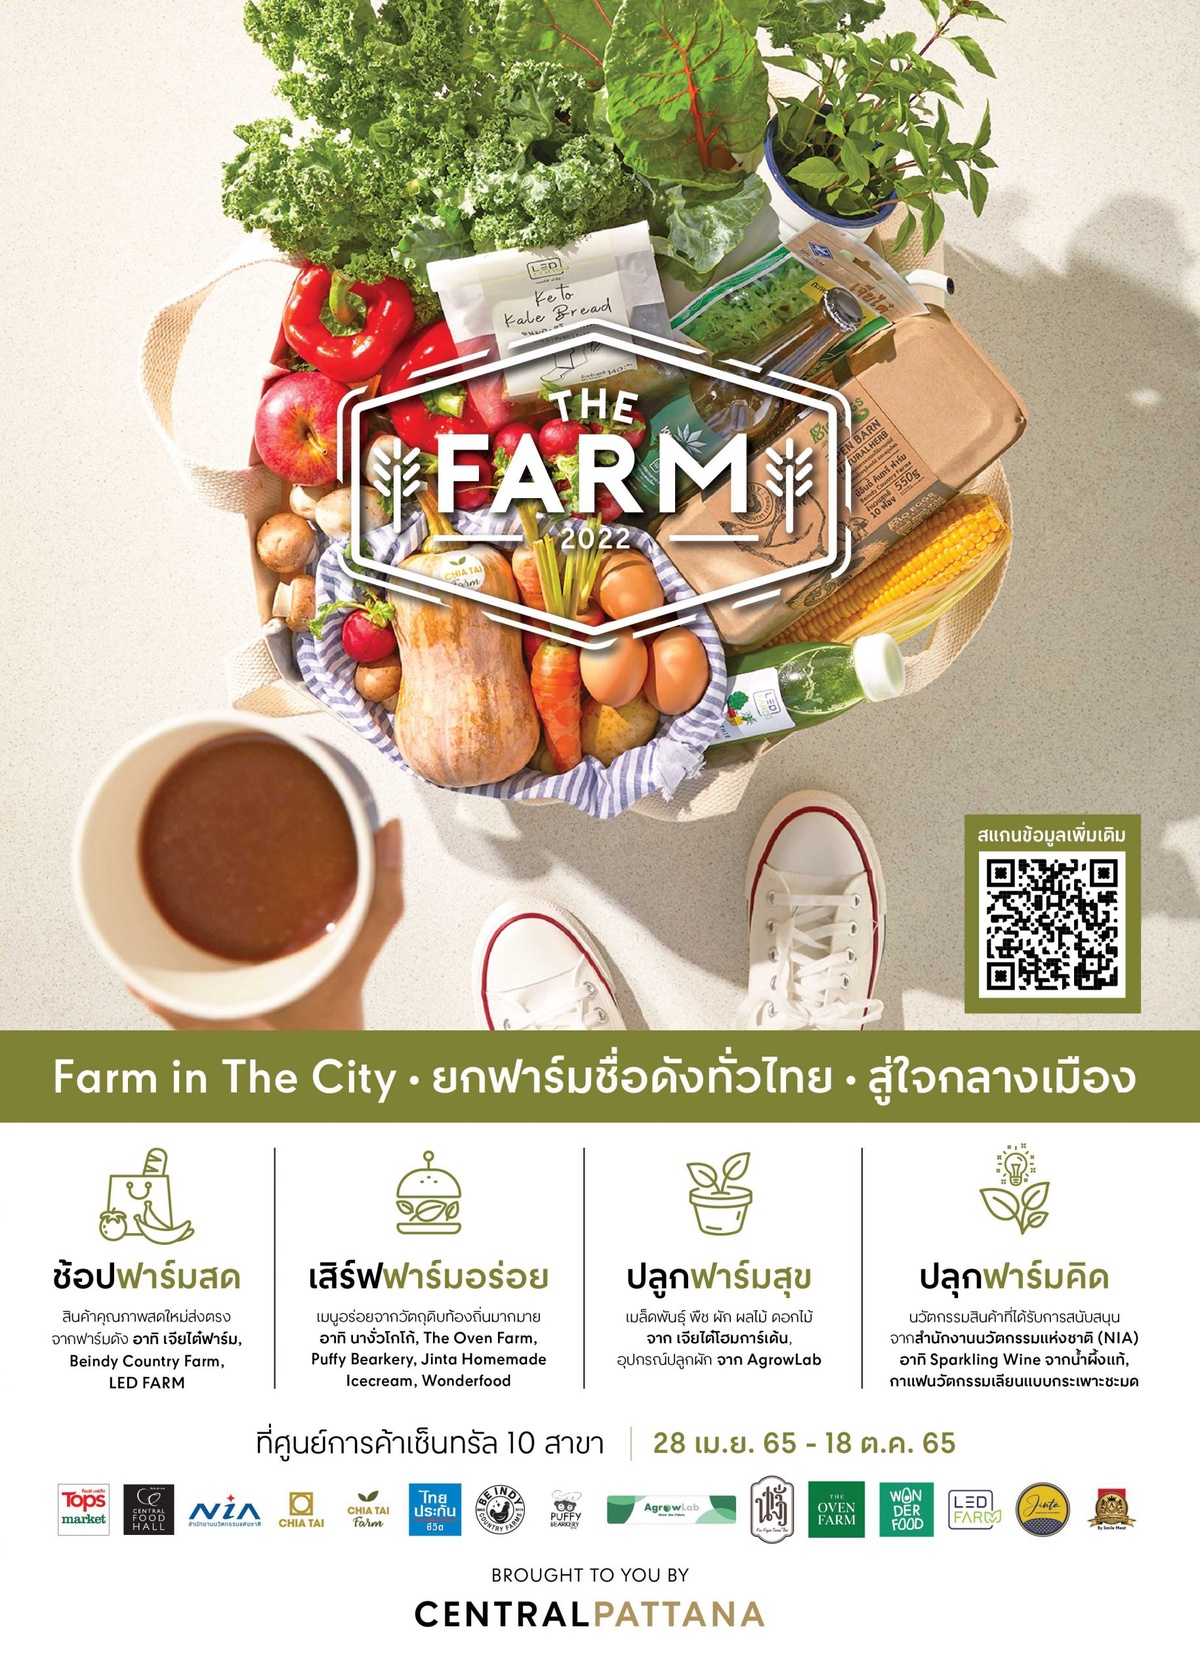 เริ่มแล้ว งาน THE FARM 2022 ชวนสัมผัสรสชาติฟาร์มสุข จากฟาร์มคุณภาพชื่อดังทั่วไทย ส่งตรงสู่ใจกลางเมือง ตอบโจทย์สายกรีนลีฟวิ่งอย่างแท้จริง